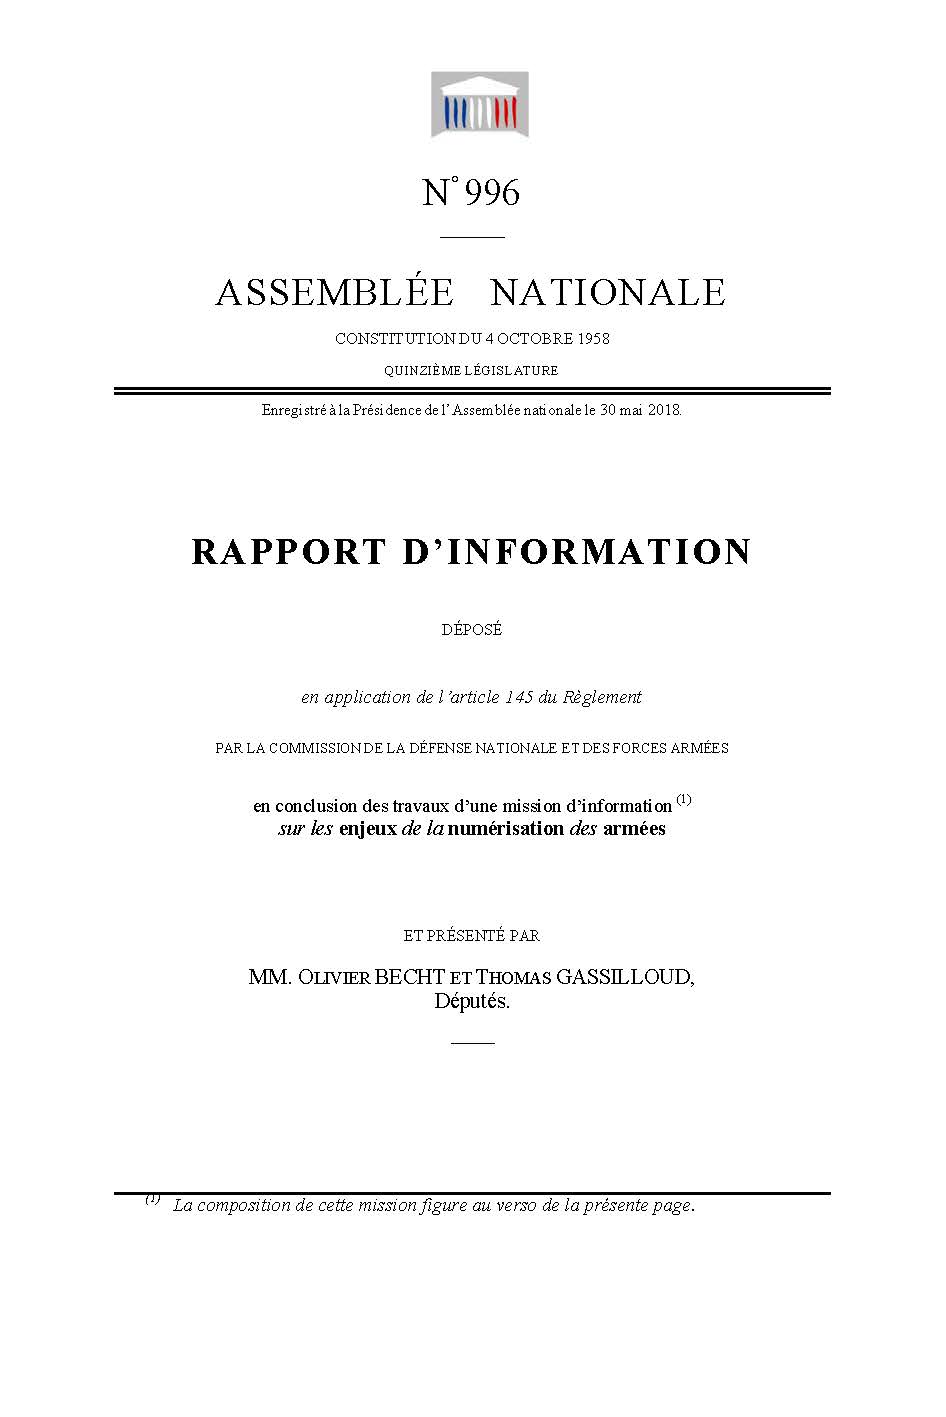 RAPPORT D’INFORMATION SUR LES ENJEUX DE LA NUMÉRISATION DES ARMÉES